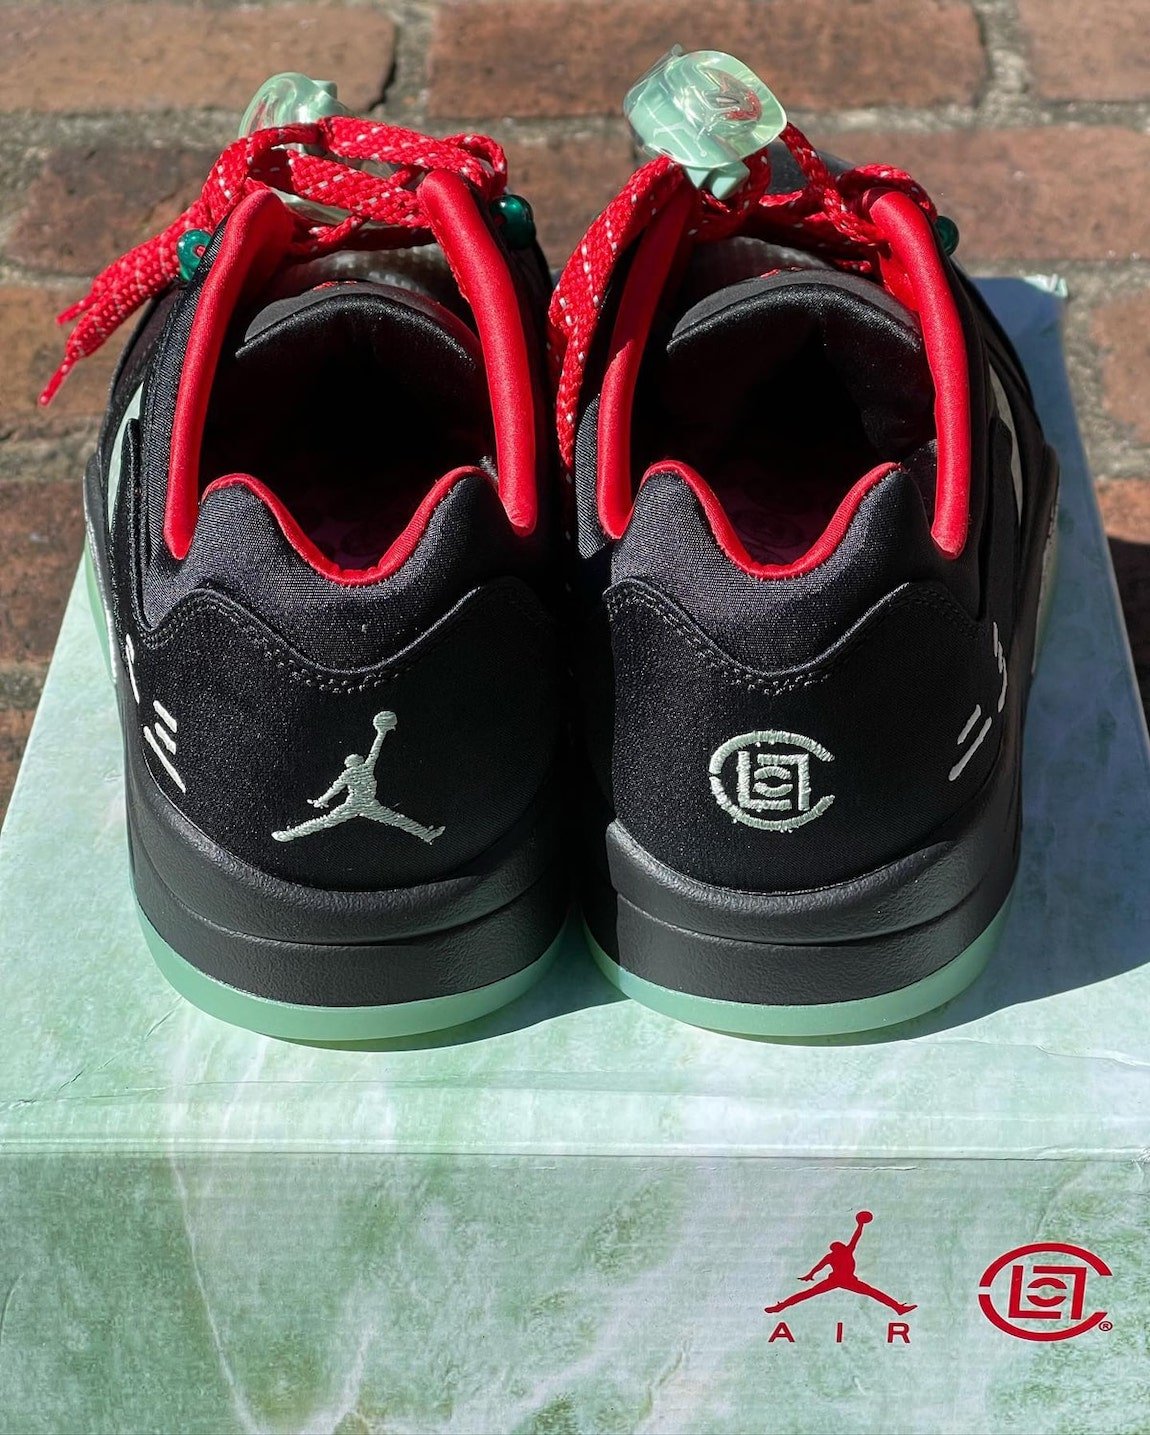 Clot Air Jordan 5 Low Release Date